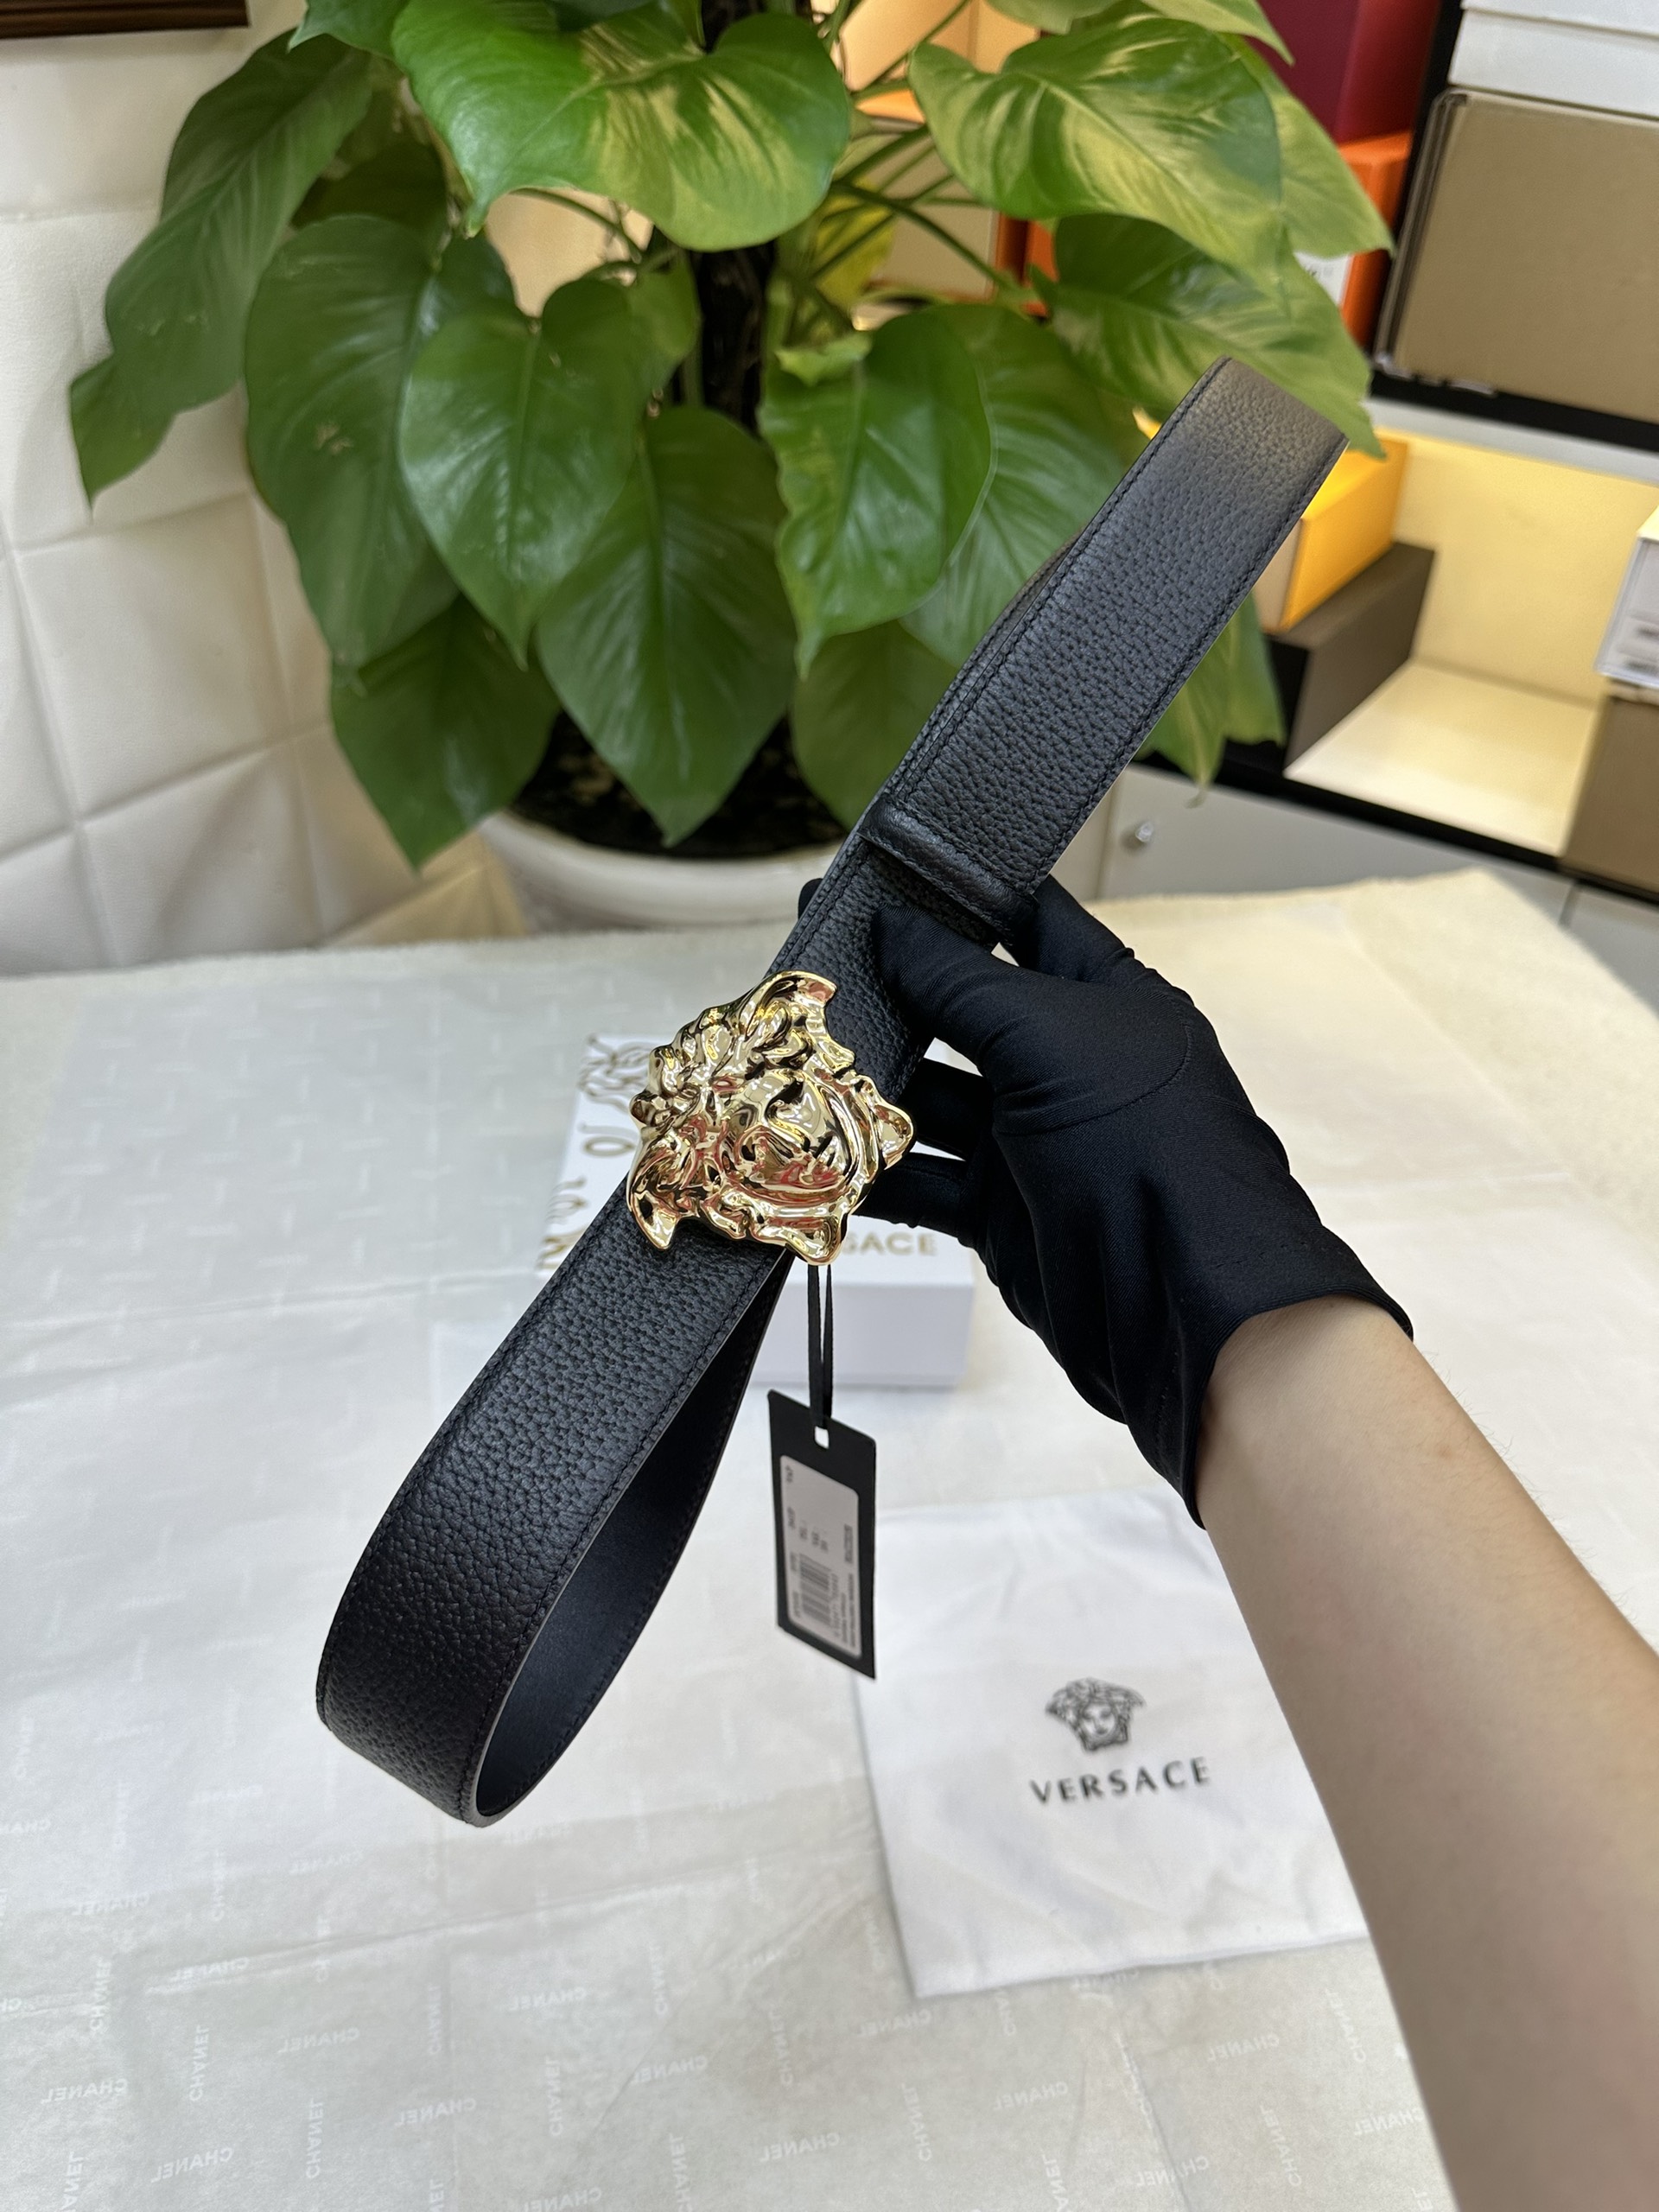 Thắt Lưng Versace Siêu Cấp Màu Đen Logo Gold Size 110-115cm